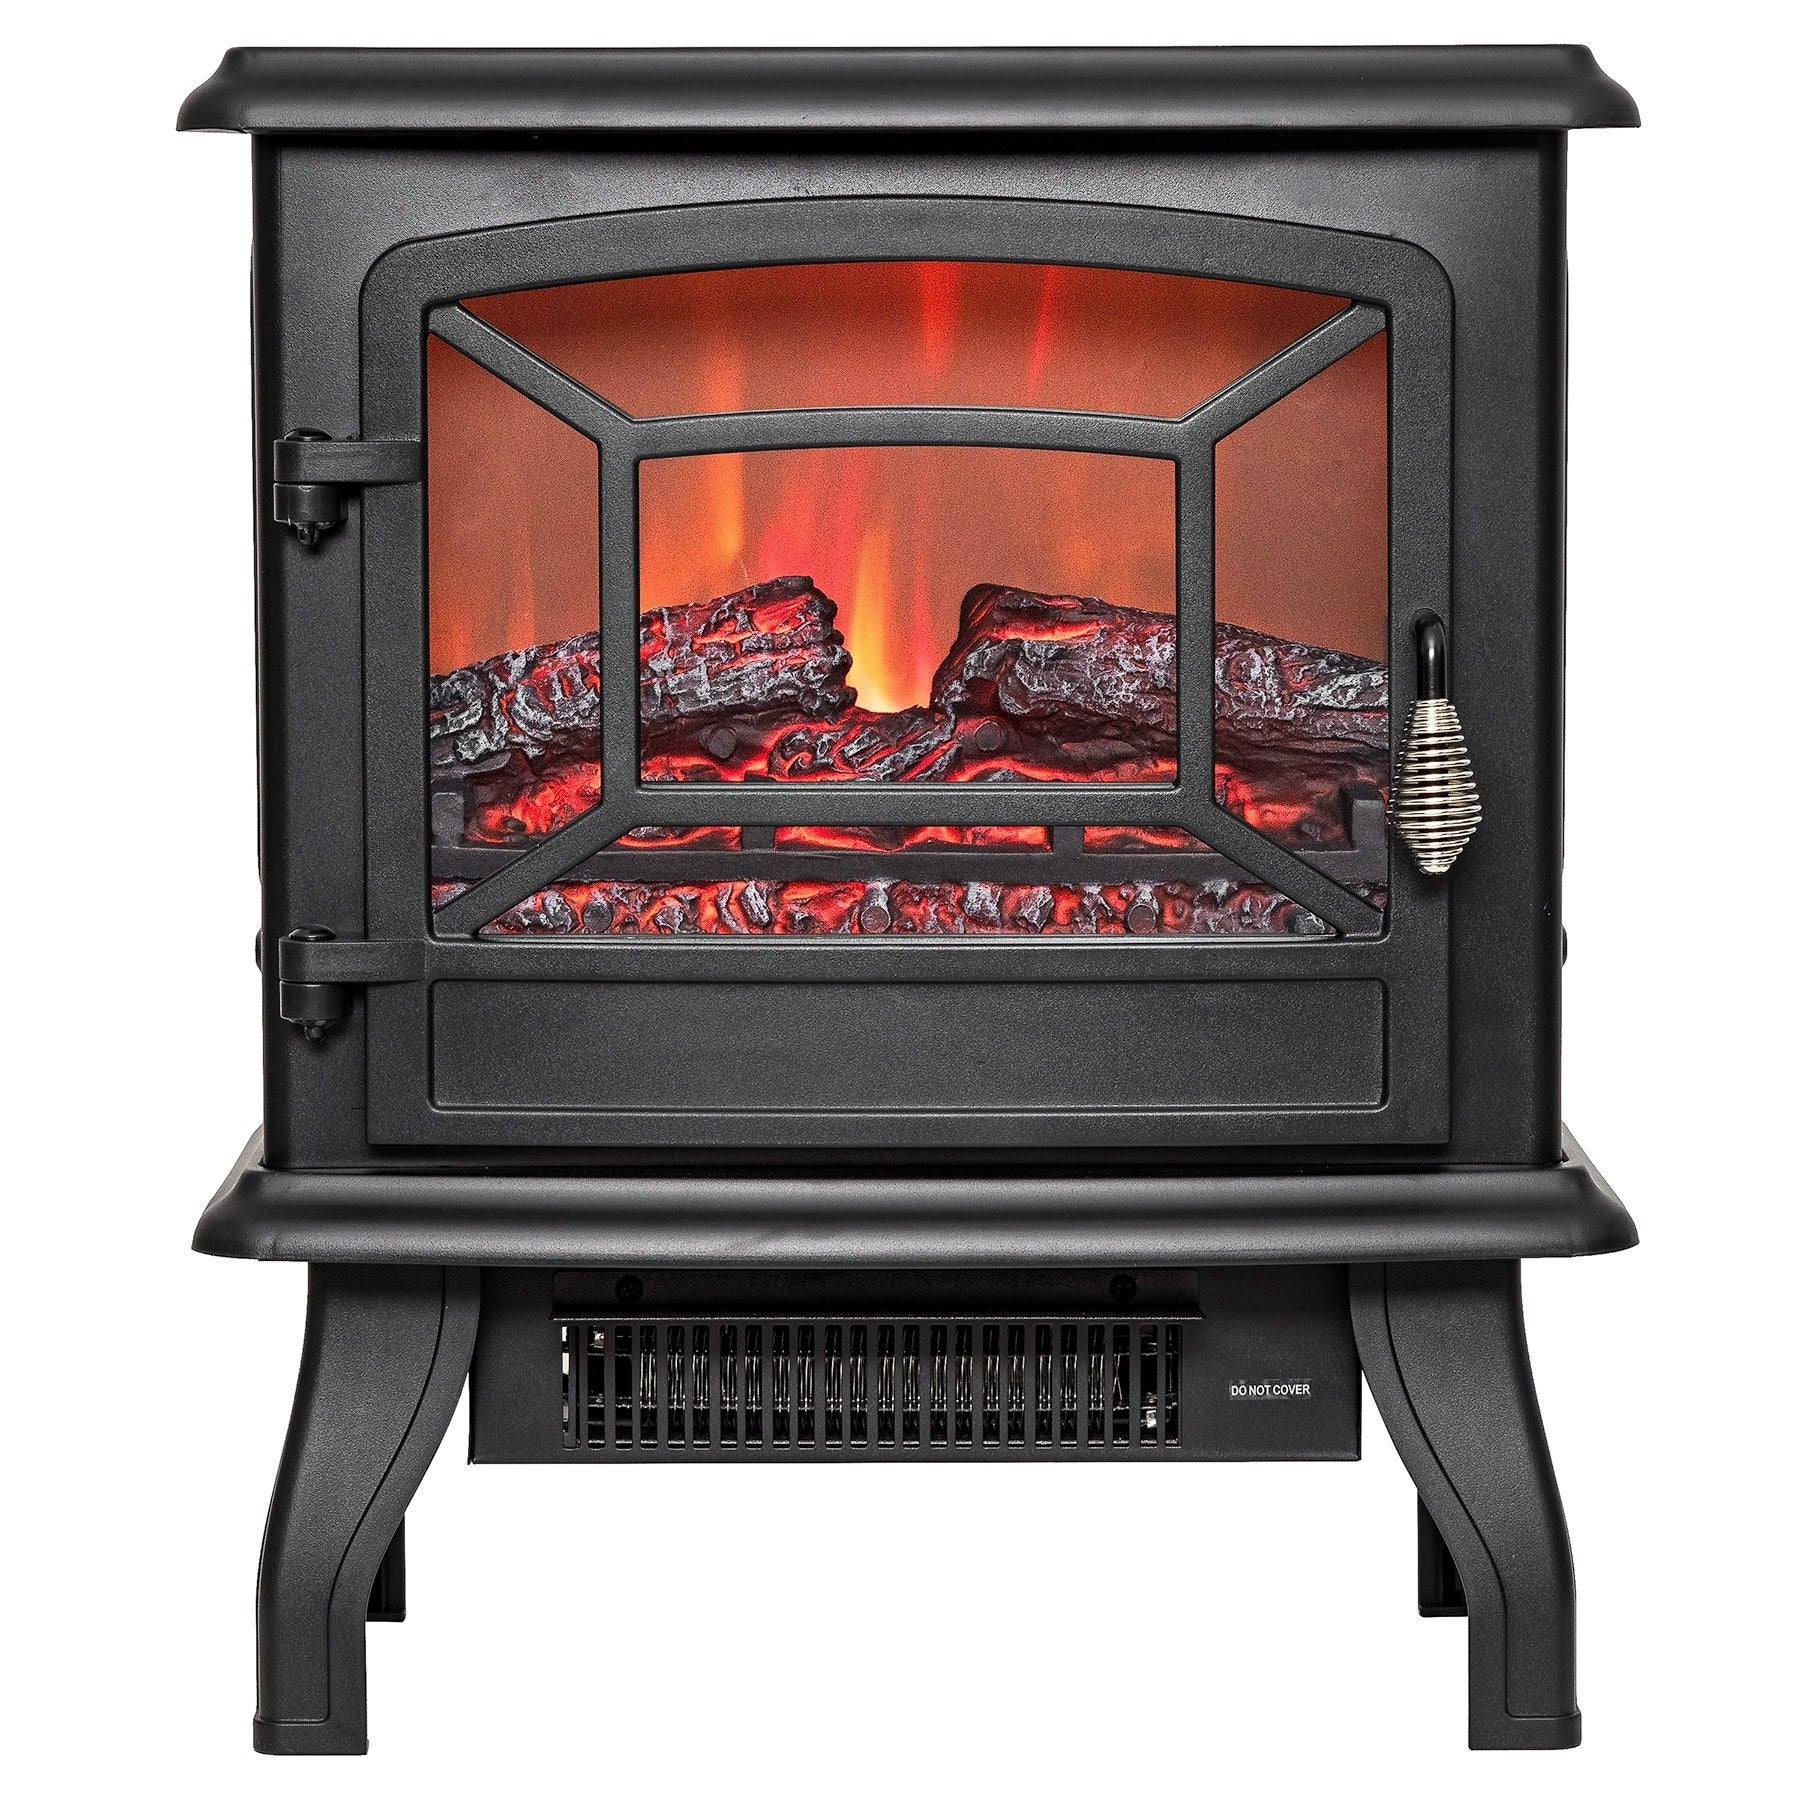 Glass Fireplace Screens Freestanding Elegant Akdy Fp0078 17" Freestanding Portable Electric Fireplace 3d Flames Firebox W Logs Heater